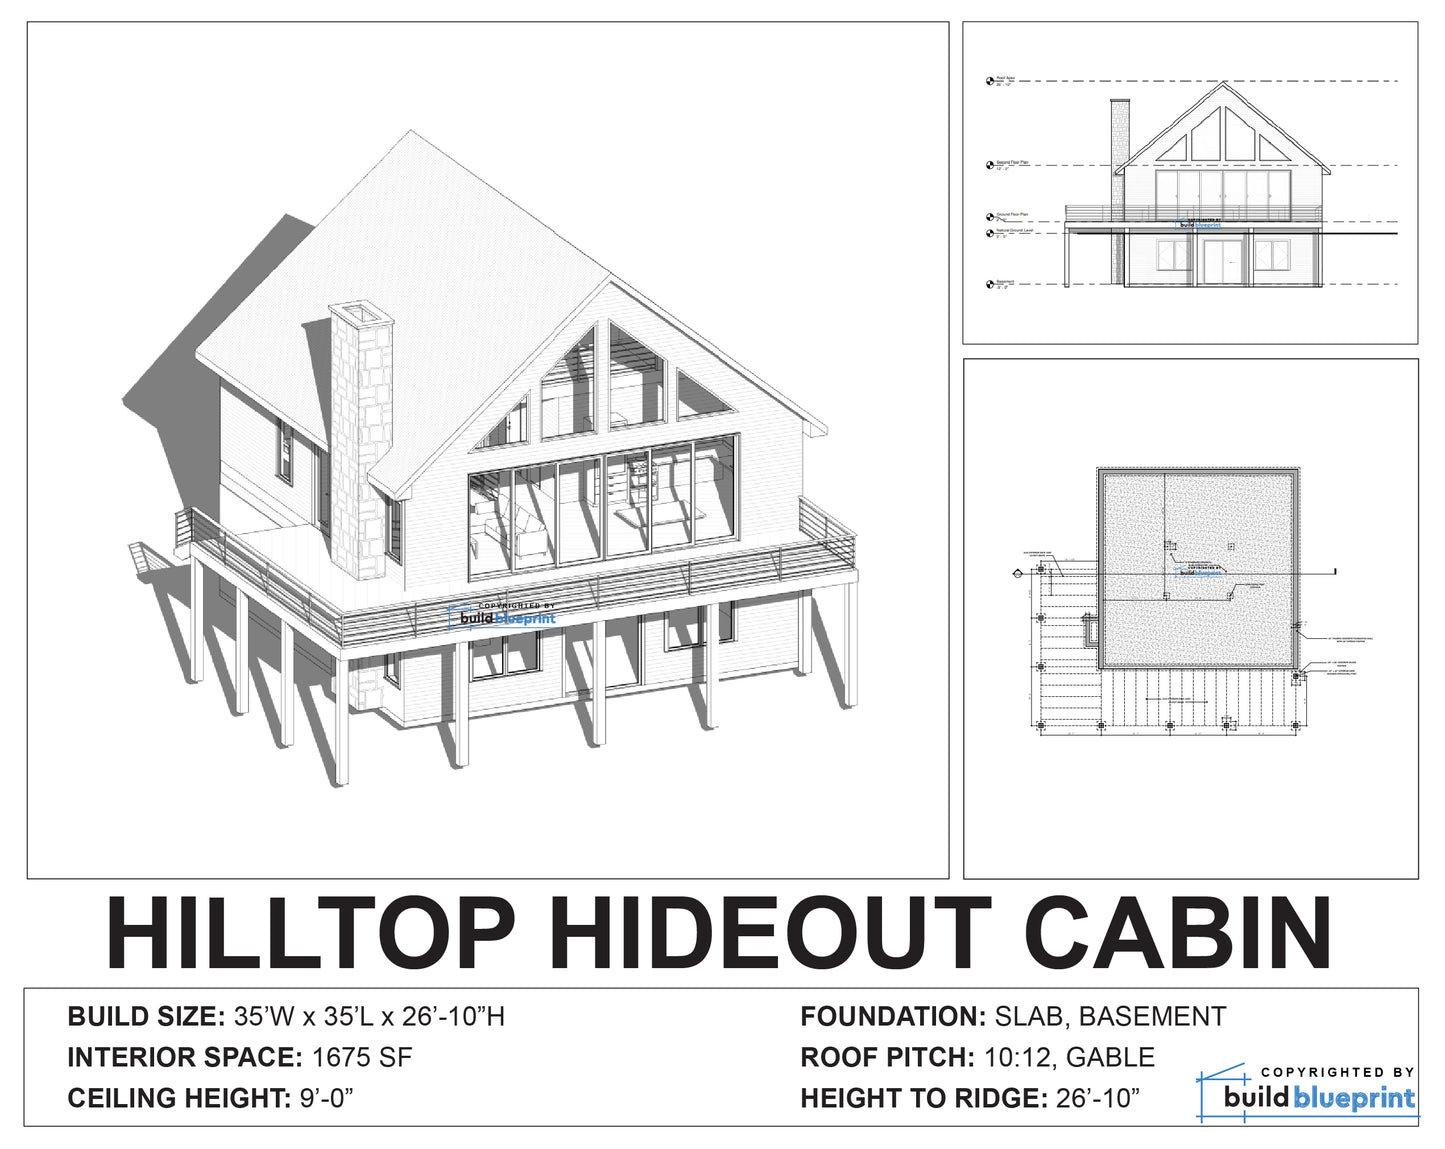 35' x 35' Hilltop Hideout Cabin Architectural Plans